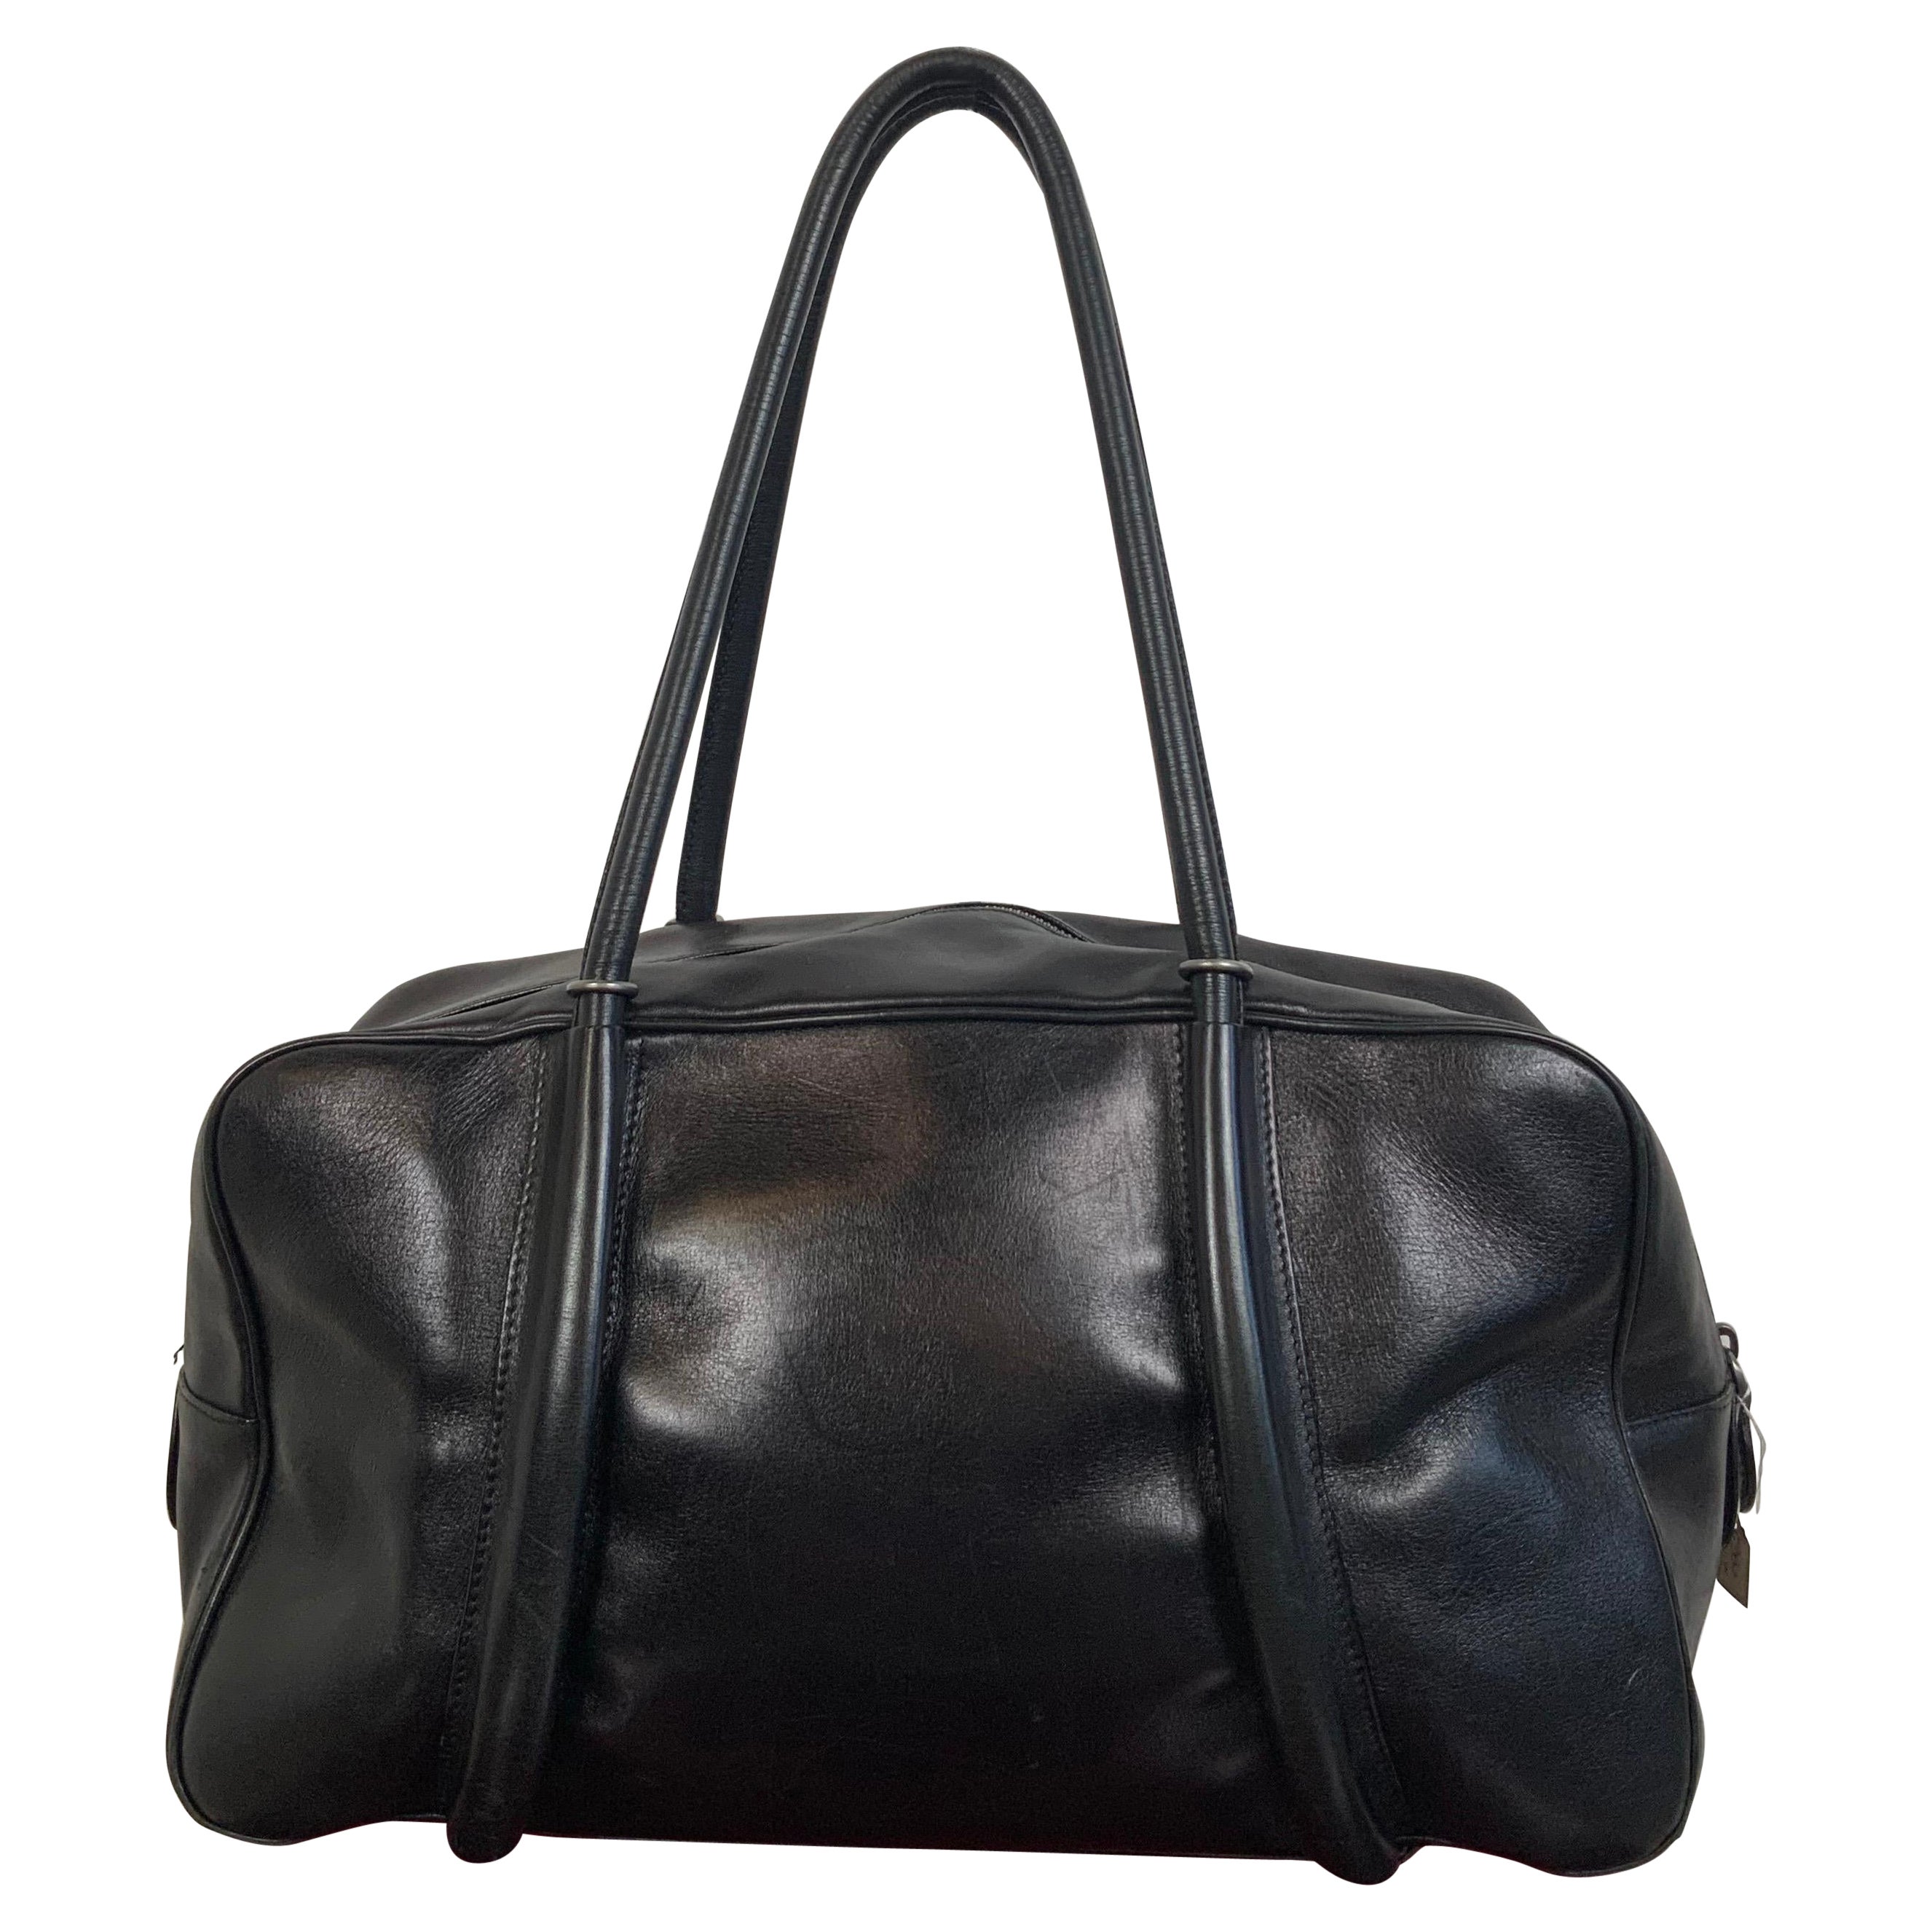 Alaia Paris leather black bag 